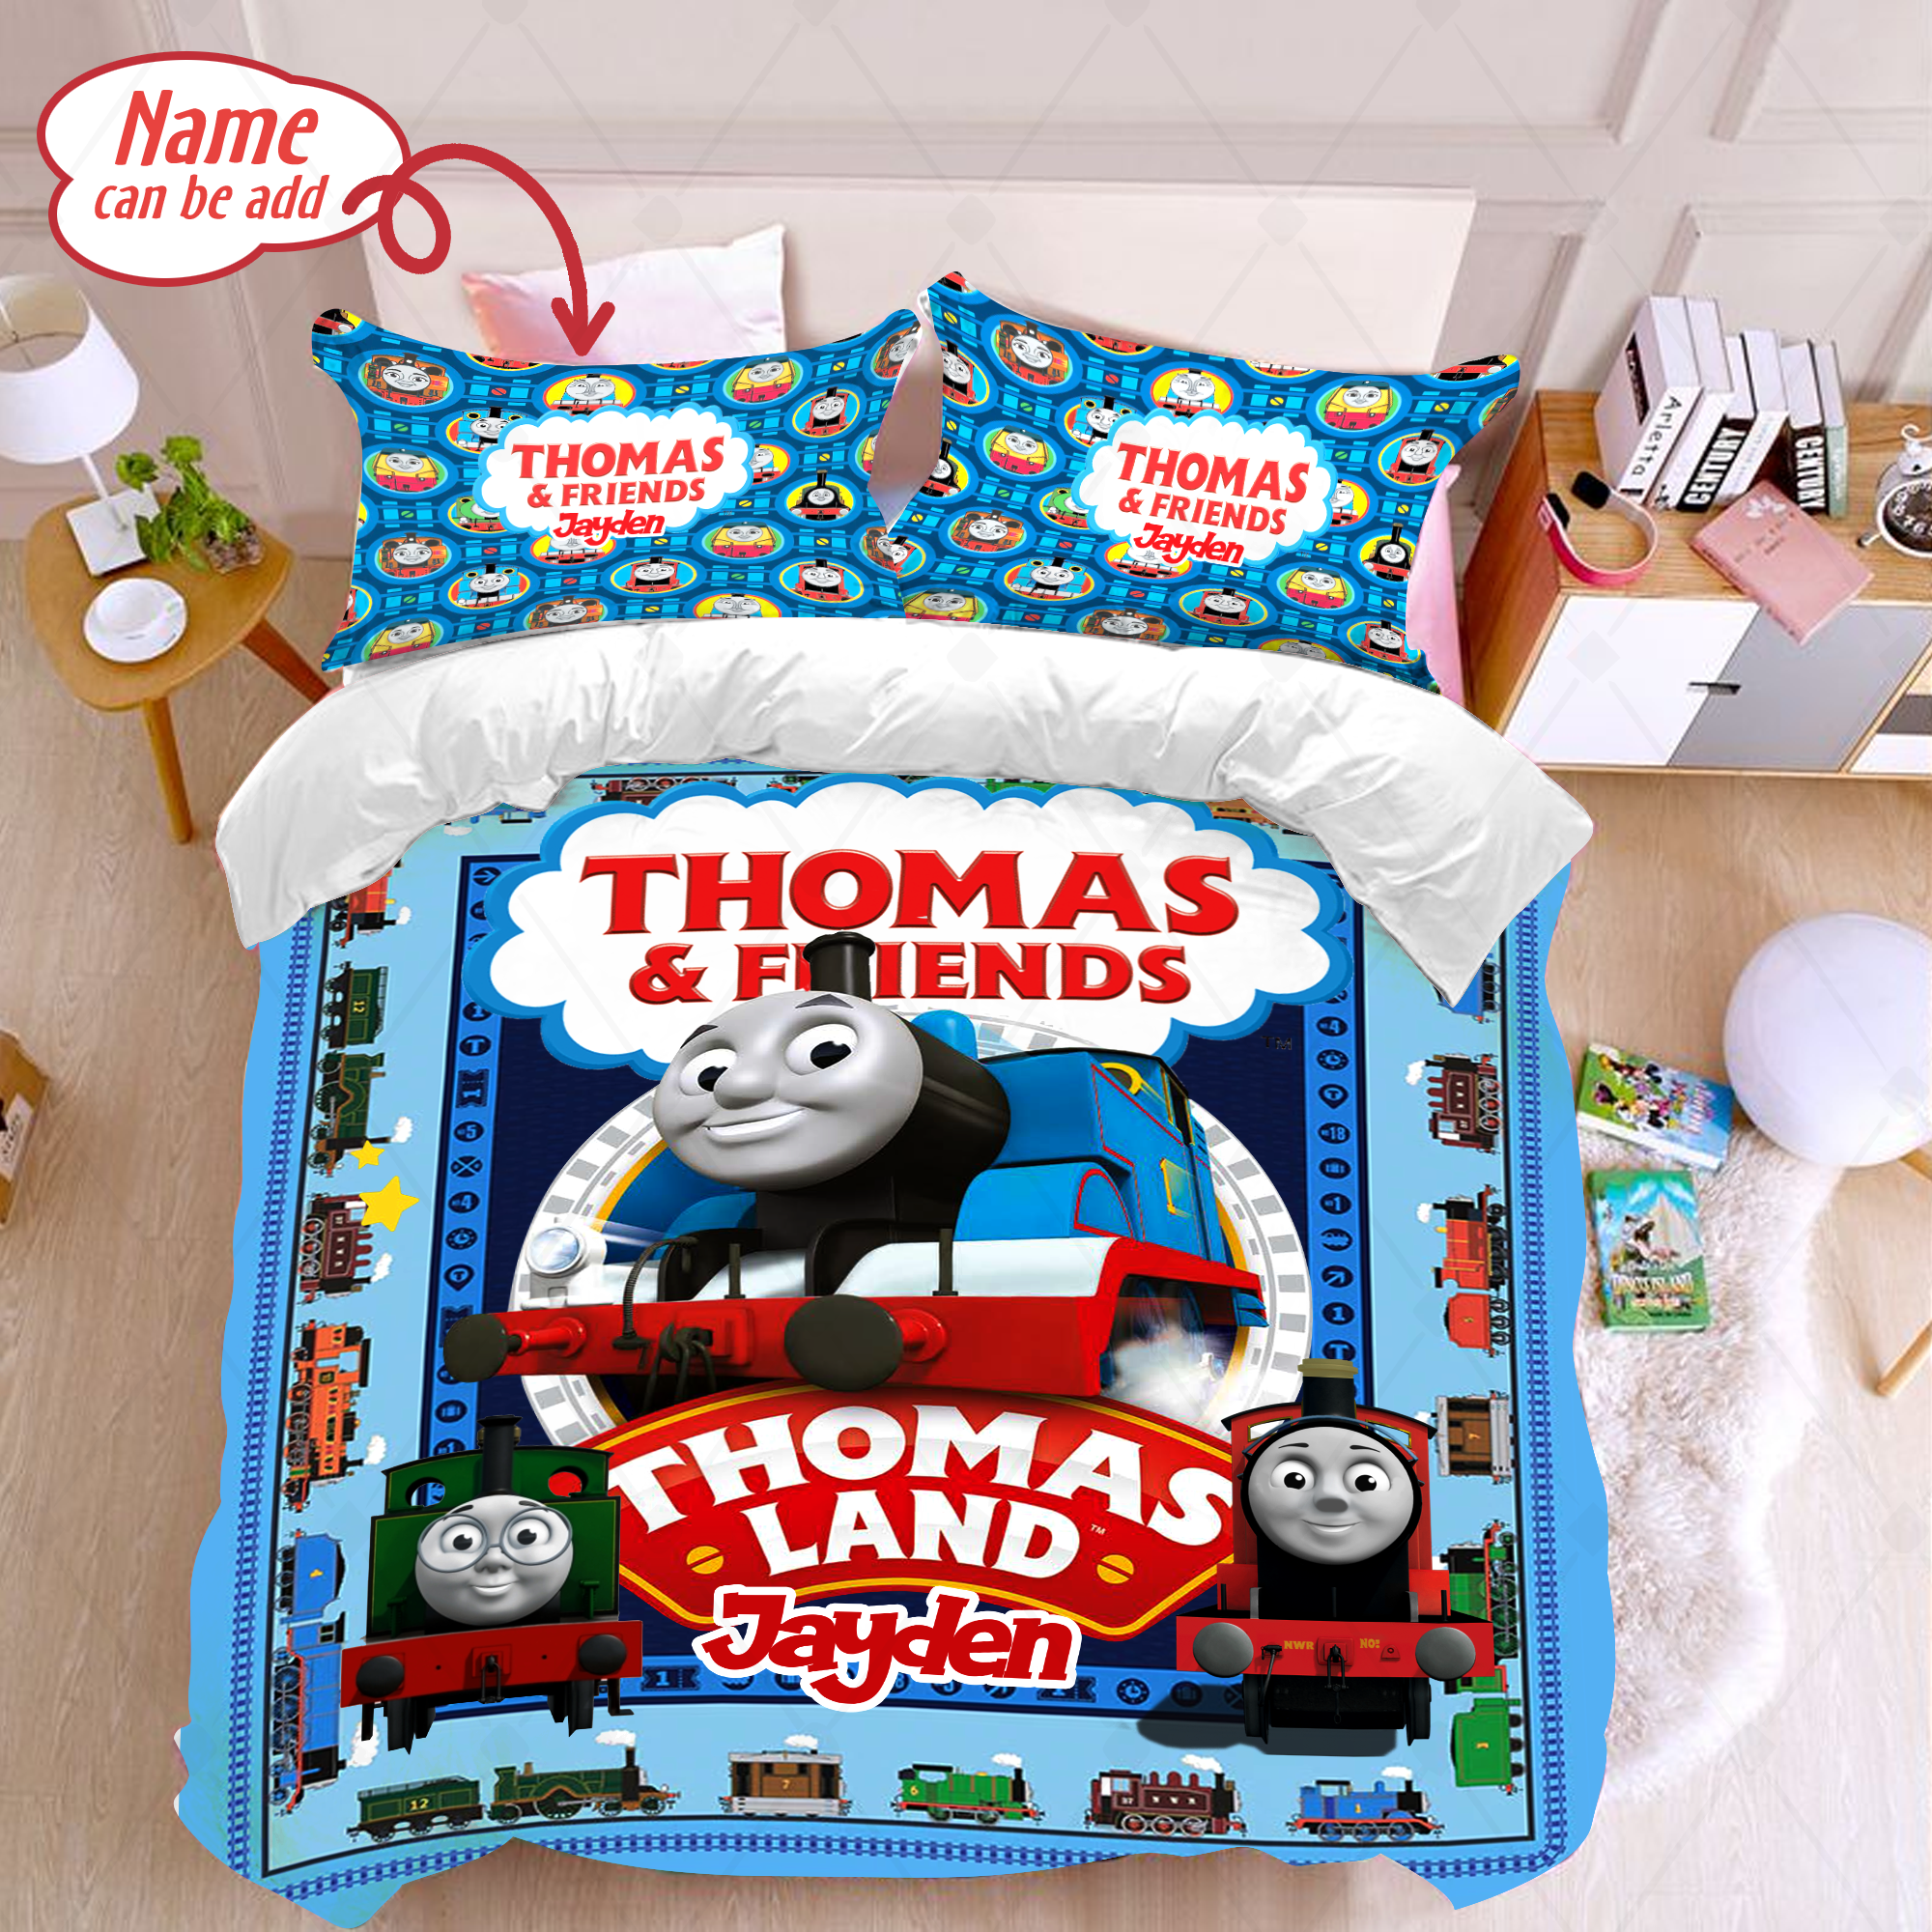 Personalized Thomas The Train Bedding Set Thomas The Train Duvet Cover And Pillowcase Thomas The Train Fleece Blanket